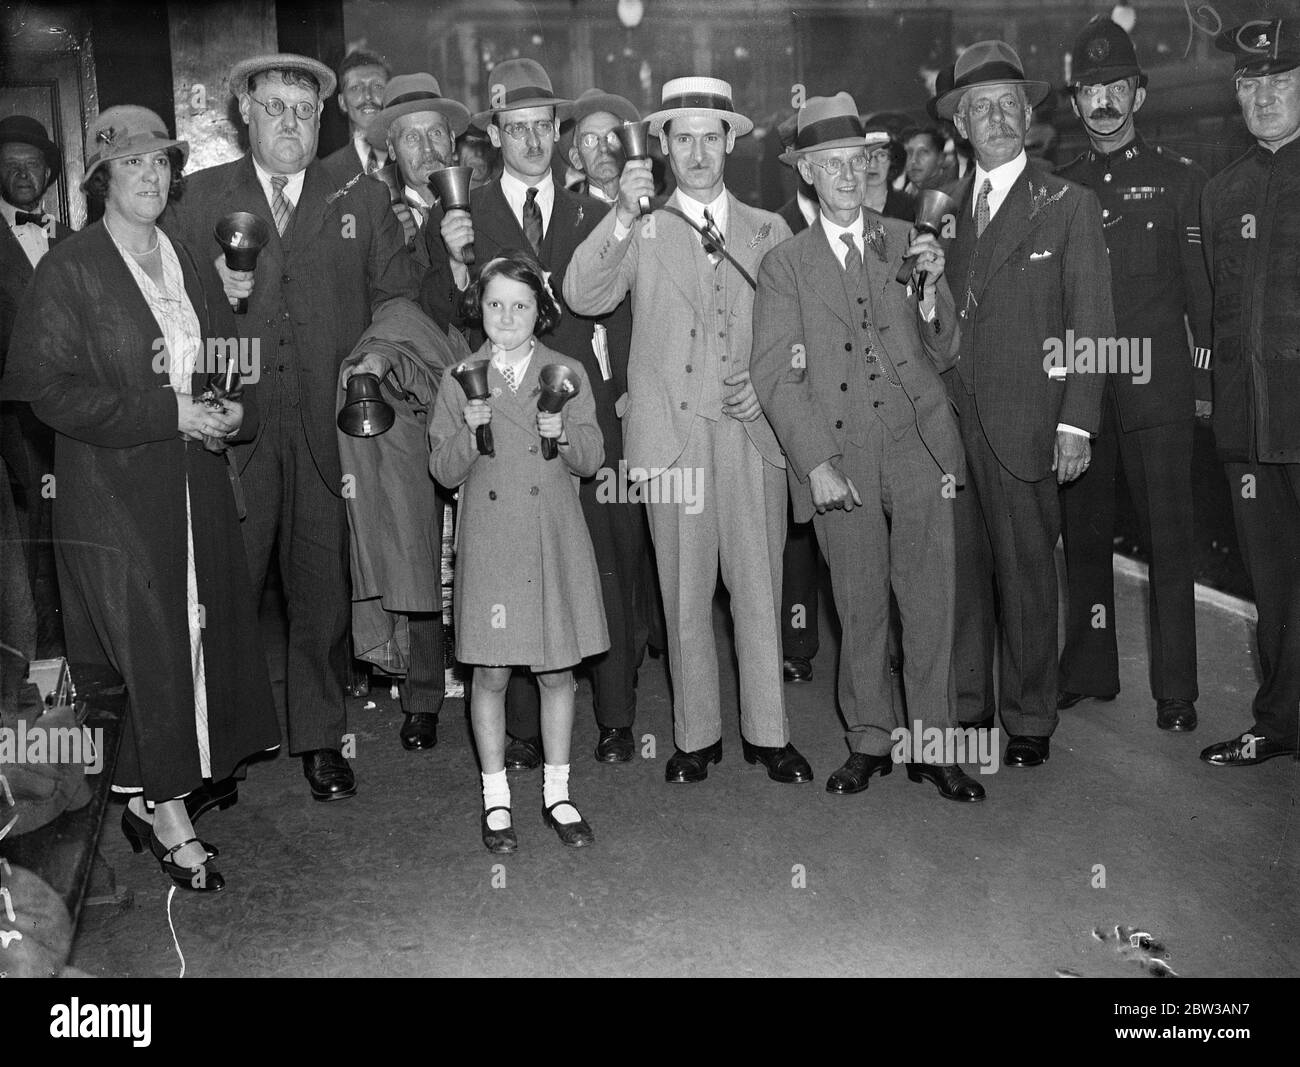 Enid Richarson 10 ans , l'un des plus jeunes sonnettes du monde à Melbourne à sonner des cloches du centenaire . Photos Enid Richardson et autres sonneries à la gare de Liverpool Street . 14 septembre 1934 Banque D'Images